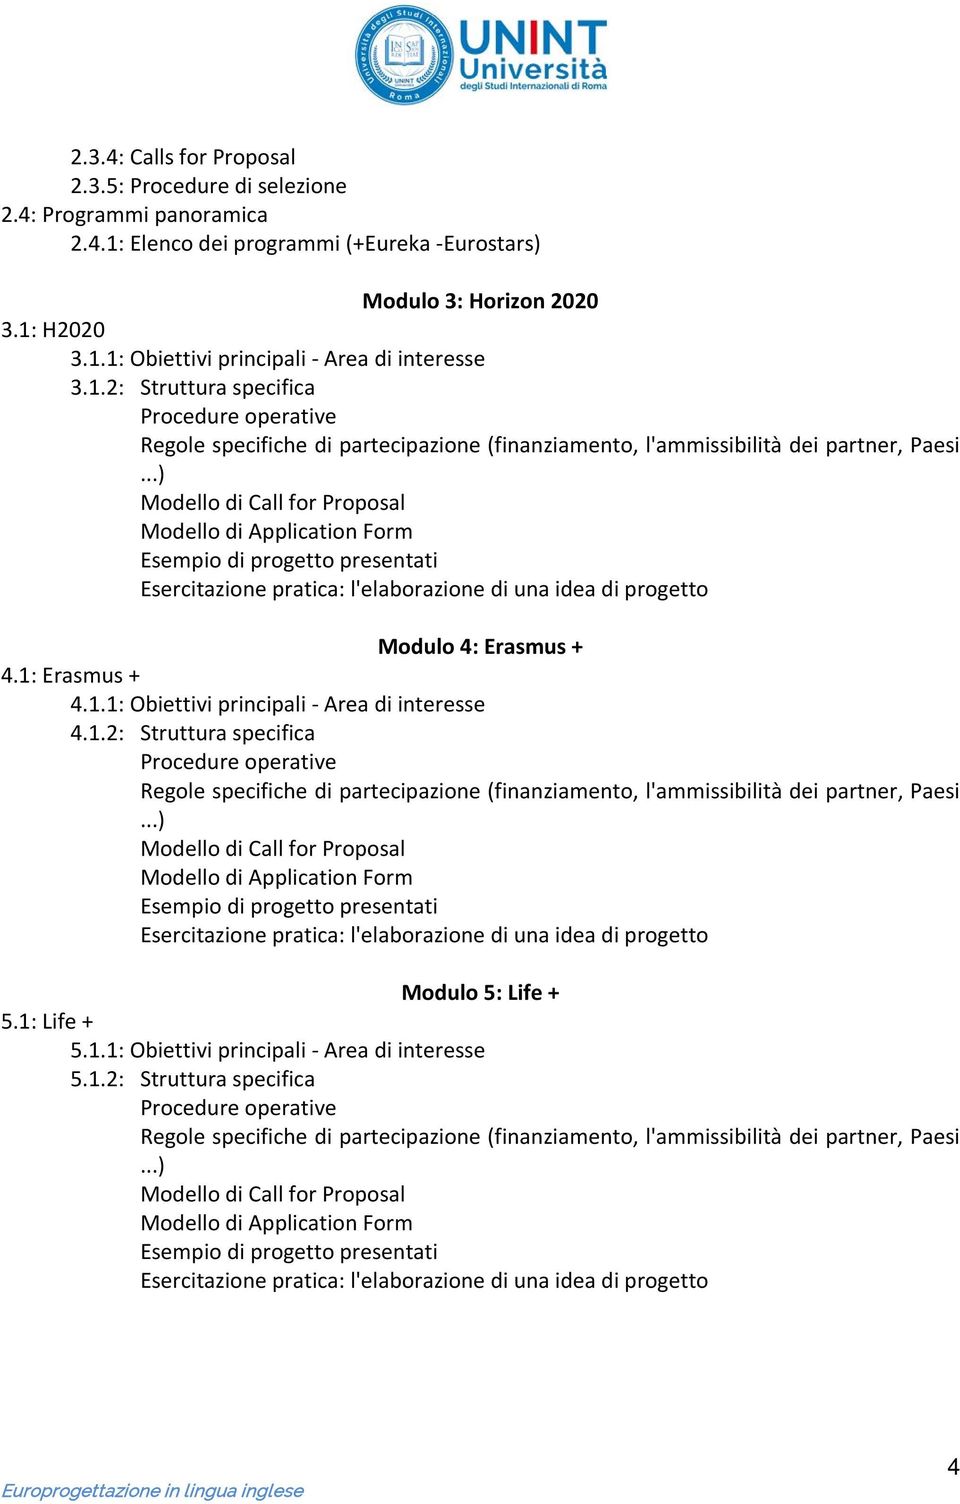 1: Erasmus + 4.1.1: Obiettivi principali - Area di interesse 4.1.2: Struttura specifica Modulo 5: Life + 5.